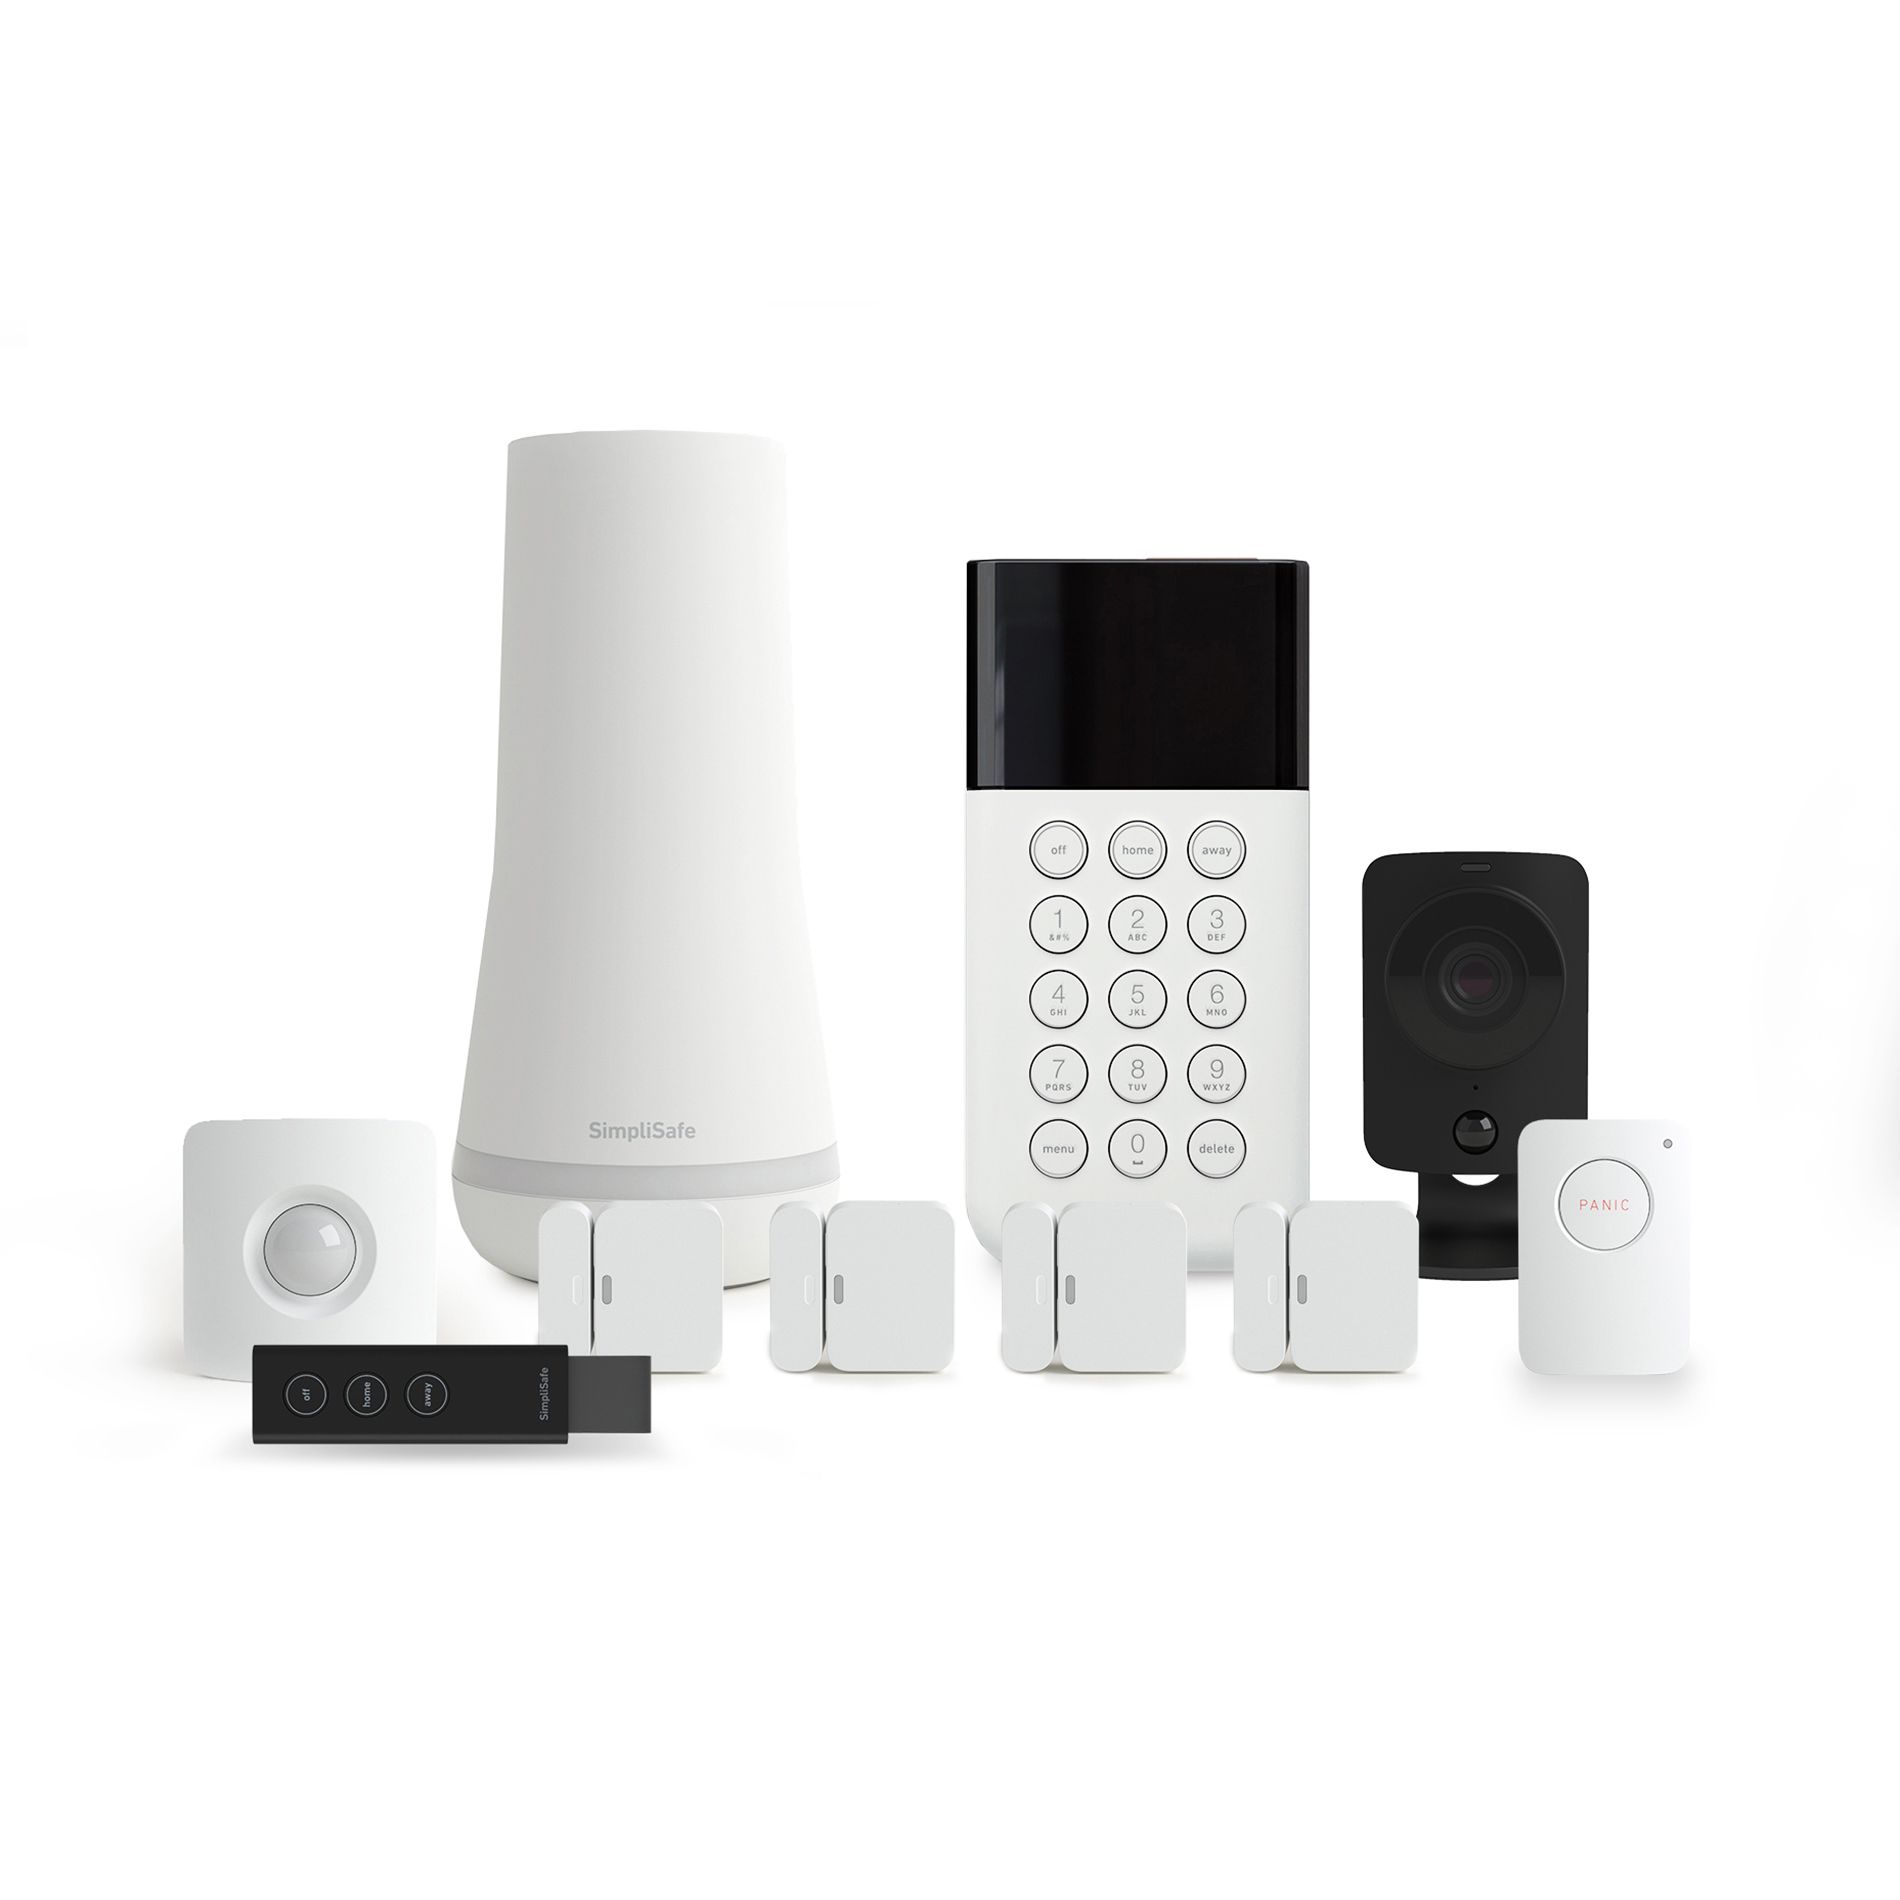 simplisafe wireless home security system with bonus simplicam